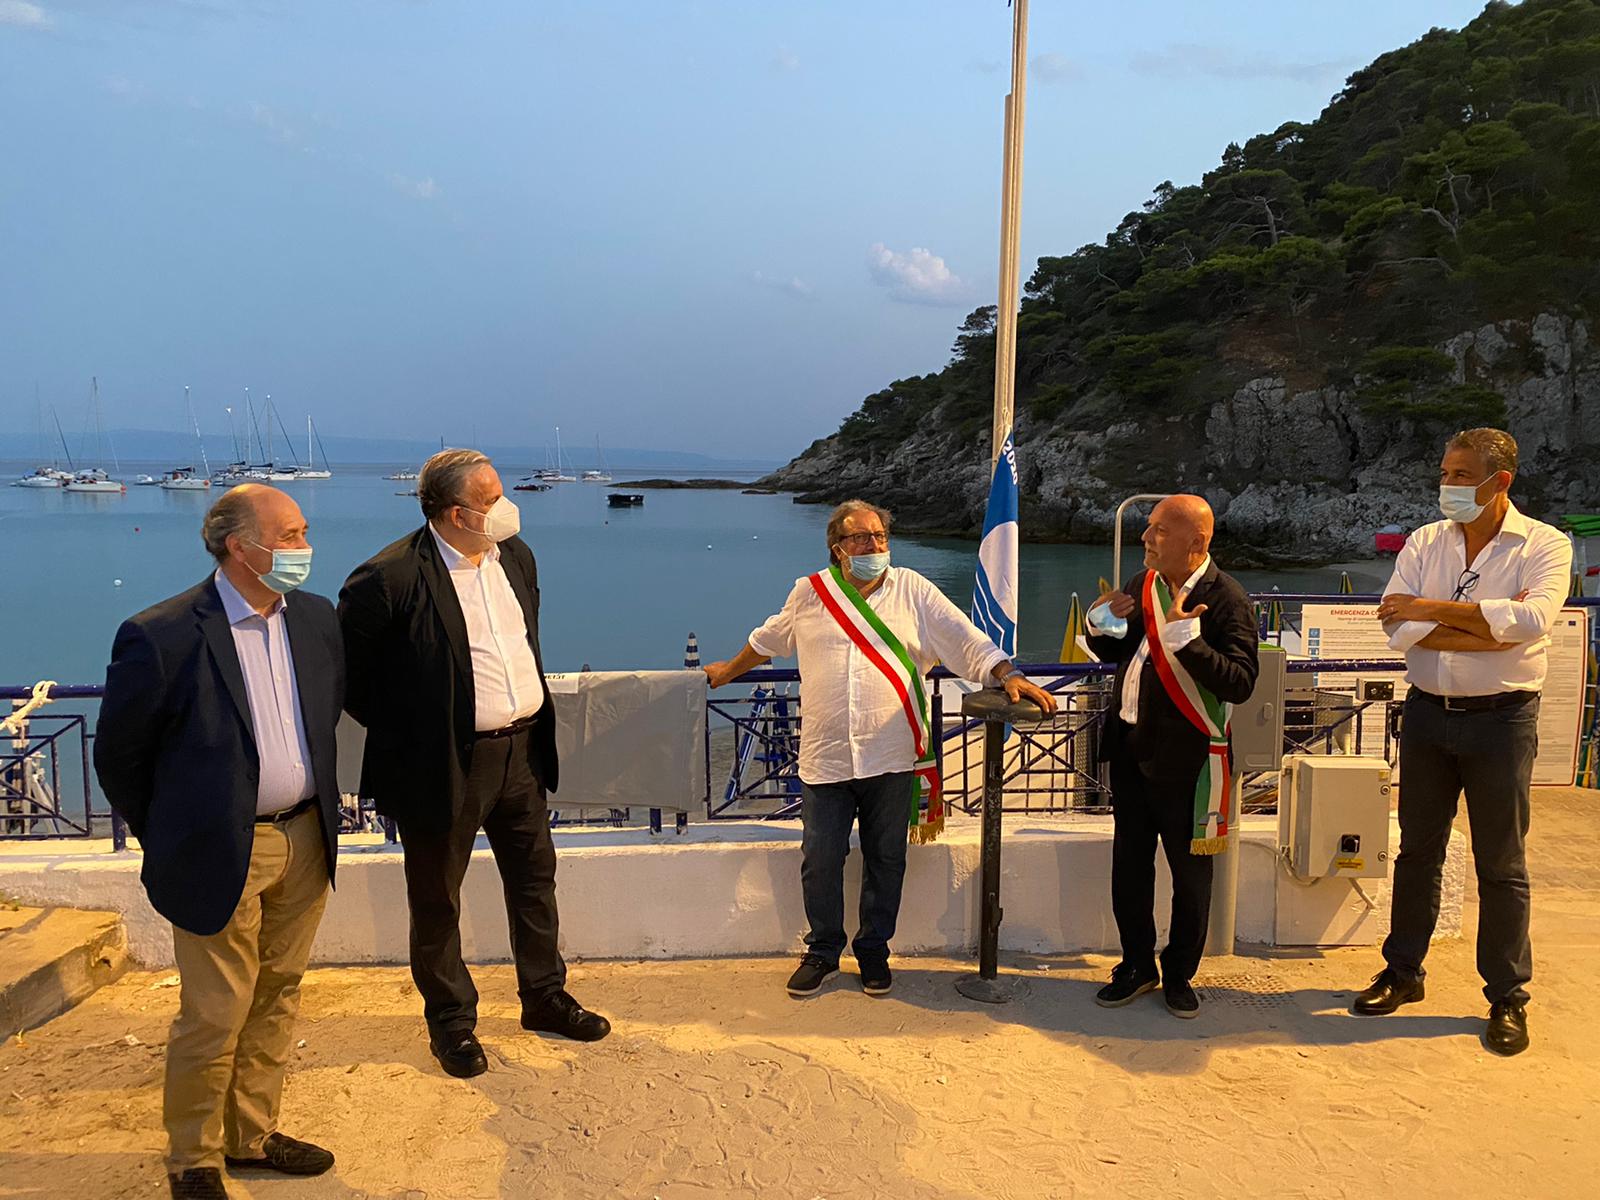 Galleria Bandiera Blu 2020 alle Isole Tremiti  Emiliano: “in Puglia grande risultato, siamo orgogliosi” - Diapositiva 2 di 8